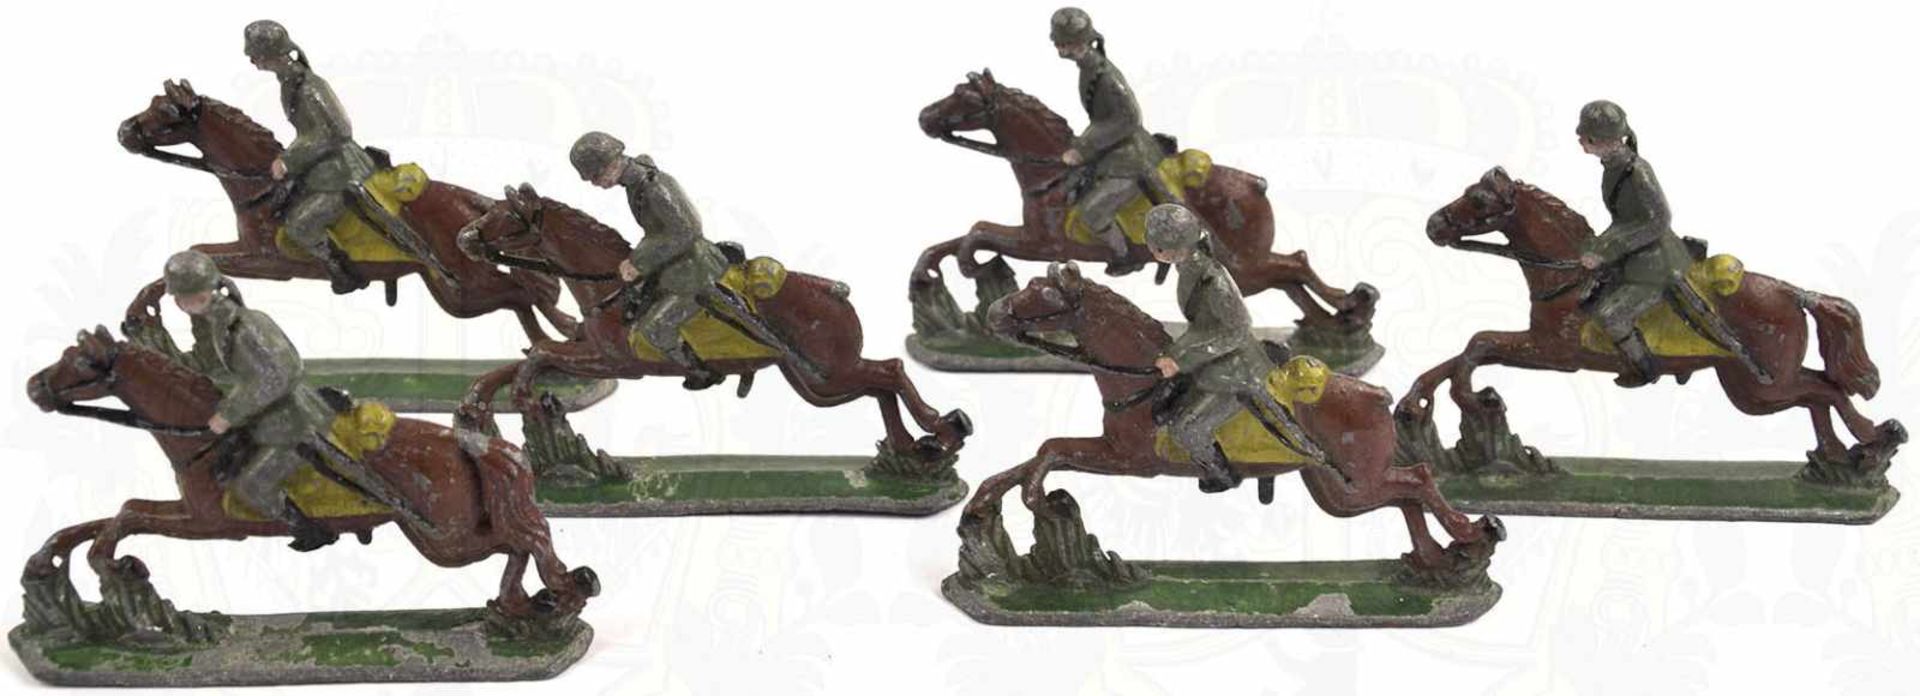 6 SOLDATENFIGUREN, Wehrmacht Kavallerie um 1935, Bleigüsse, farbig bemalt, alle Pferde im Galopp,